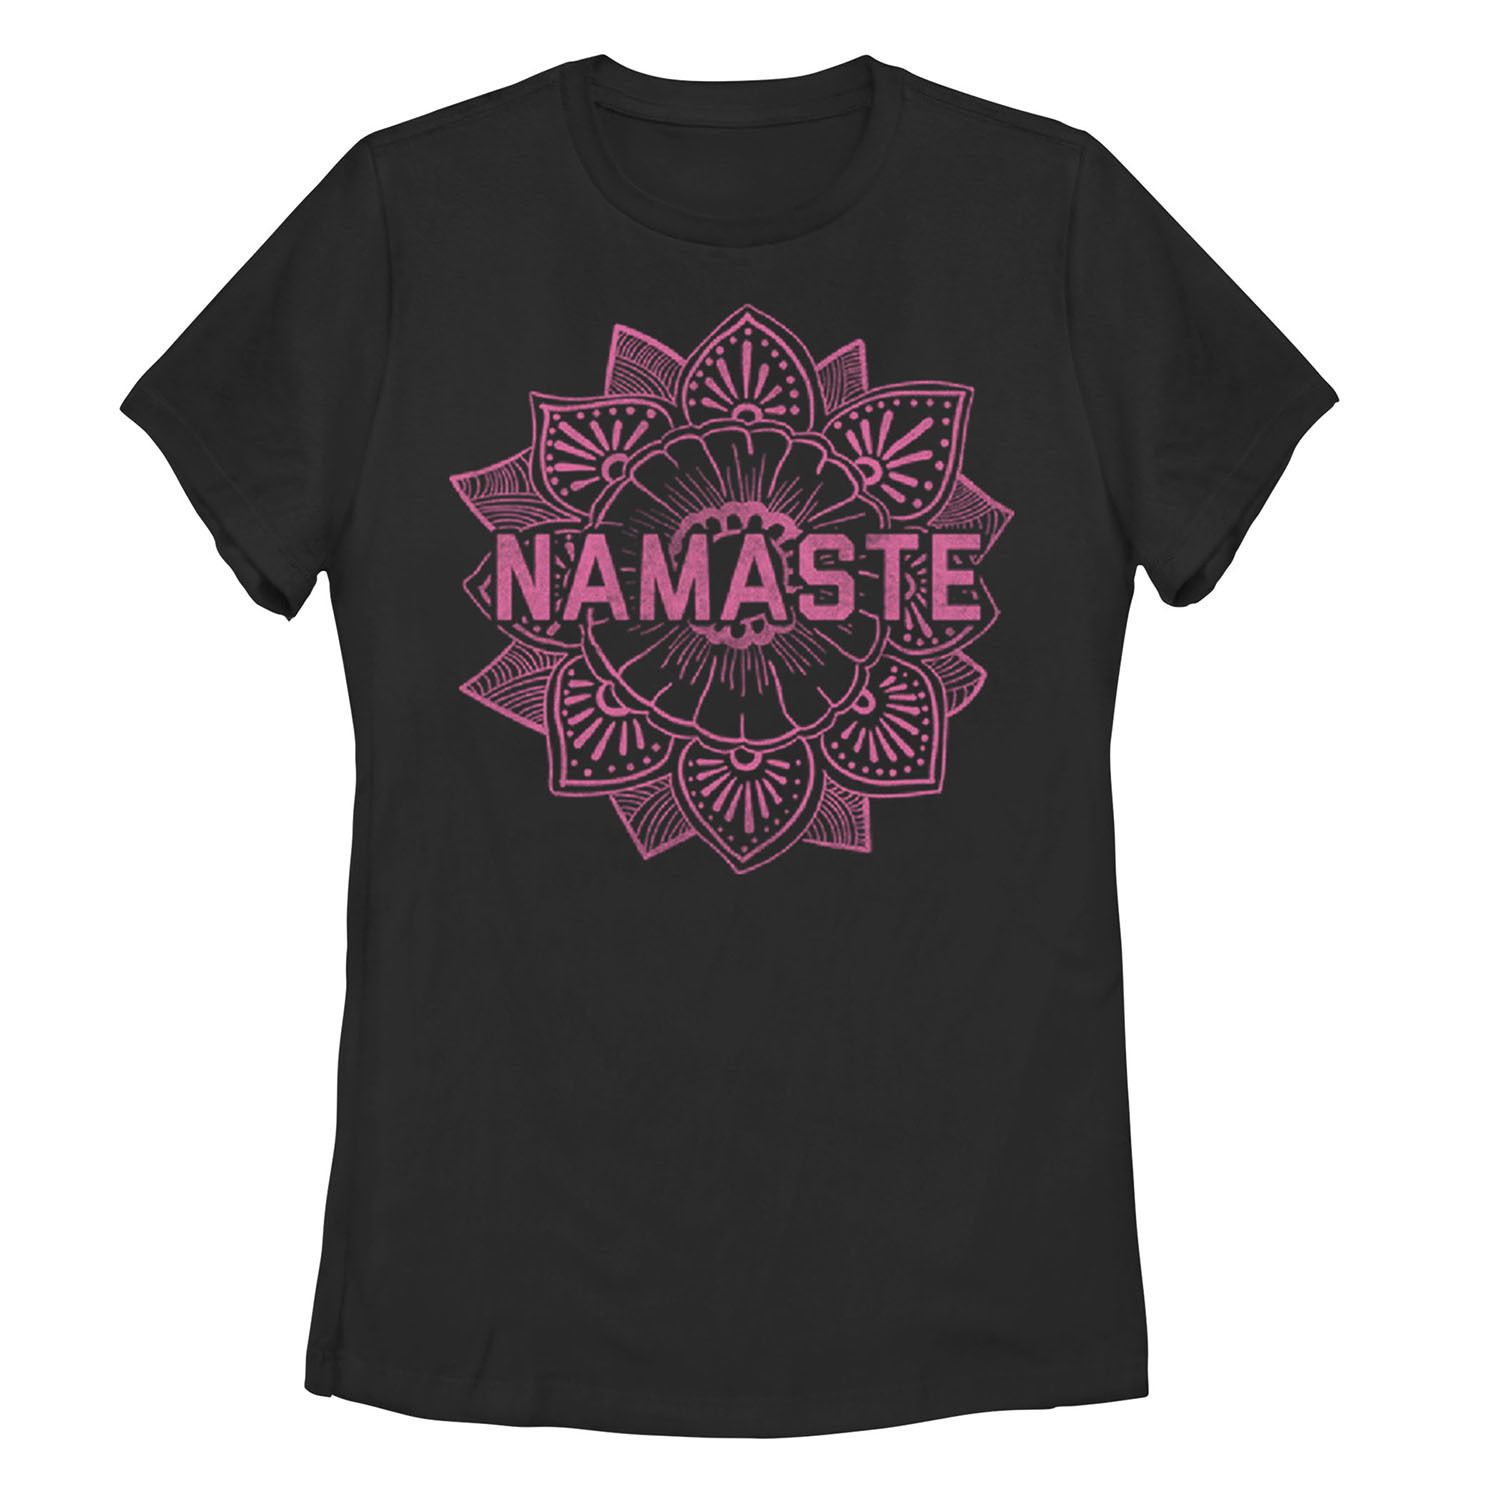 Детская футболка Namaste Paisey Henna Flower с рисунком в стиле бохо в винтажном стиле